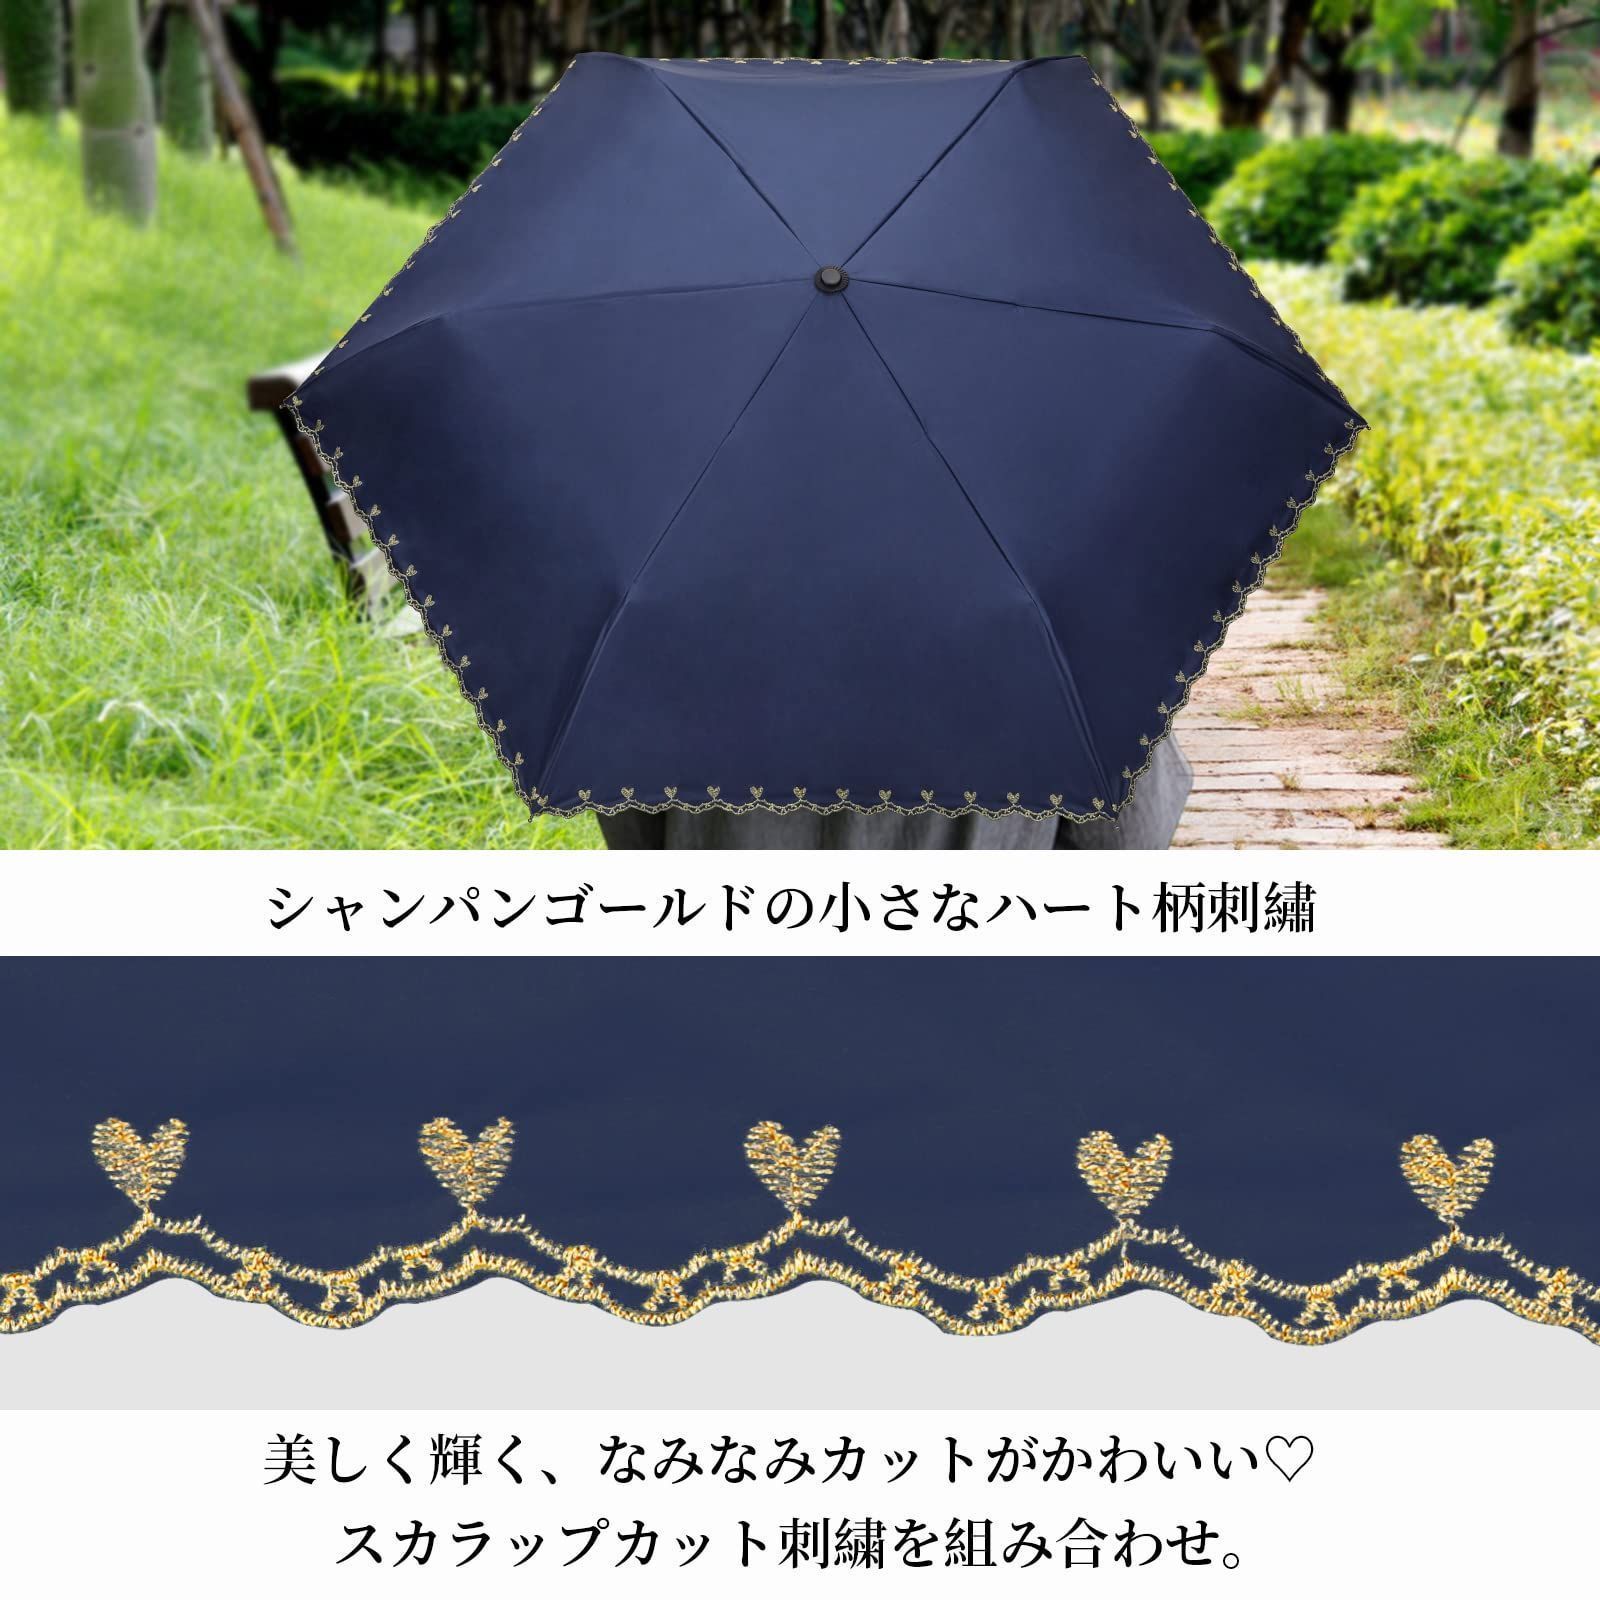 【色: ベージュ】SHIO MOKUシオモク日傘 UVカット遮光 遮熱 折りたた